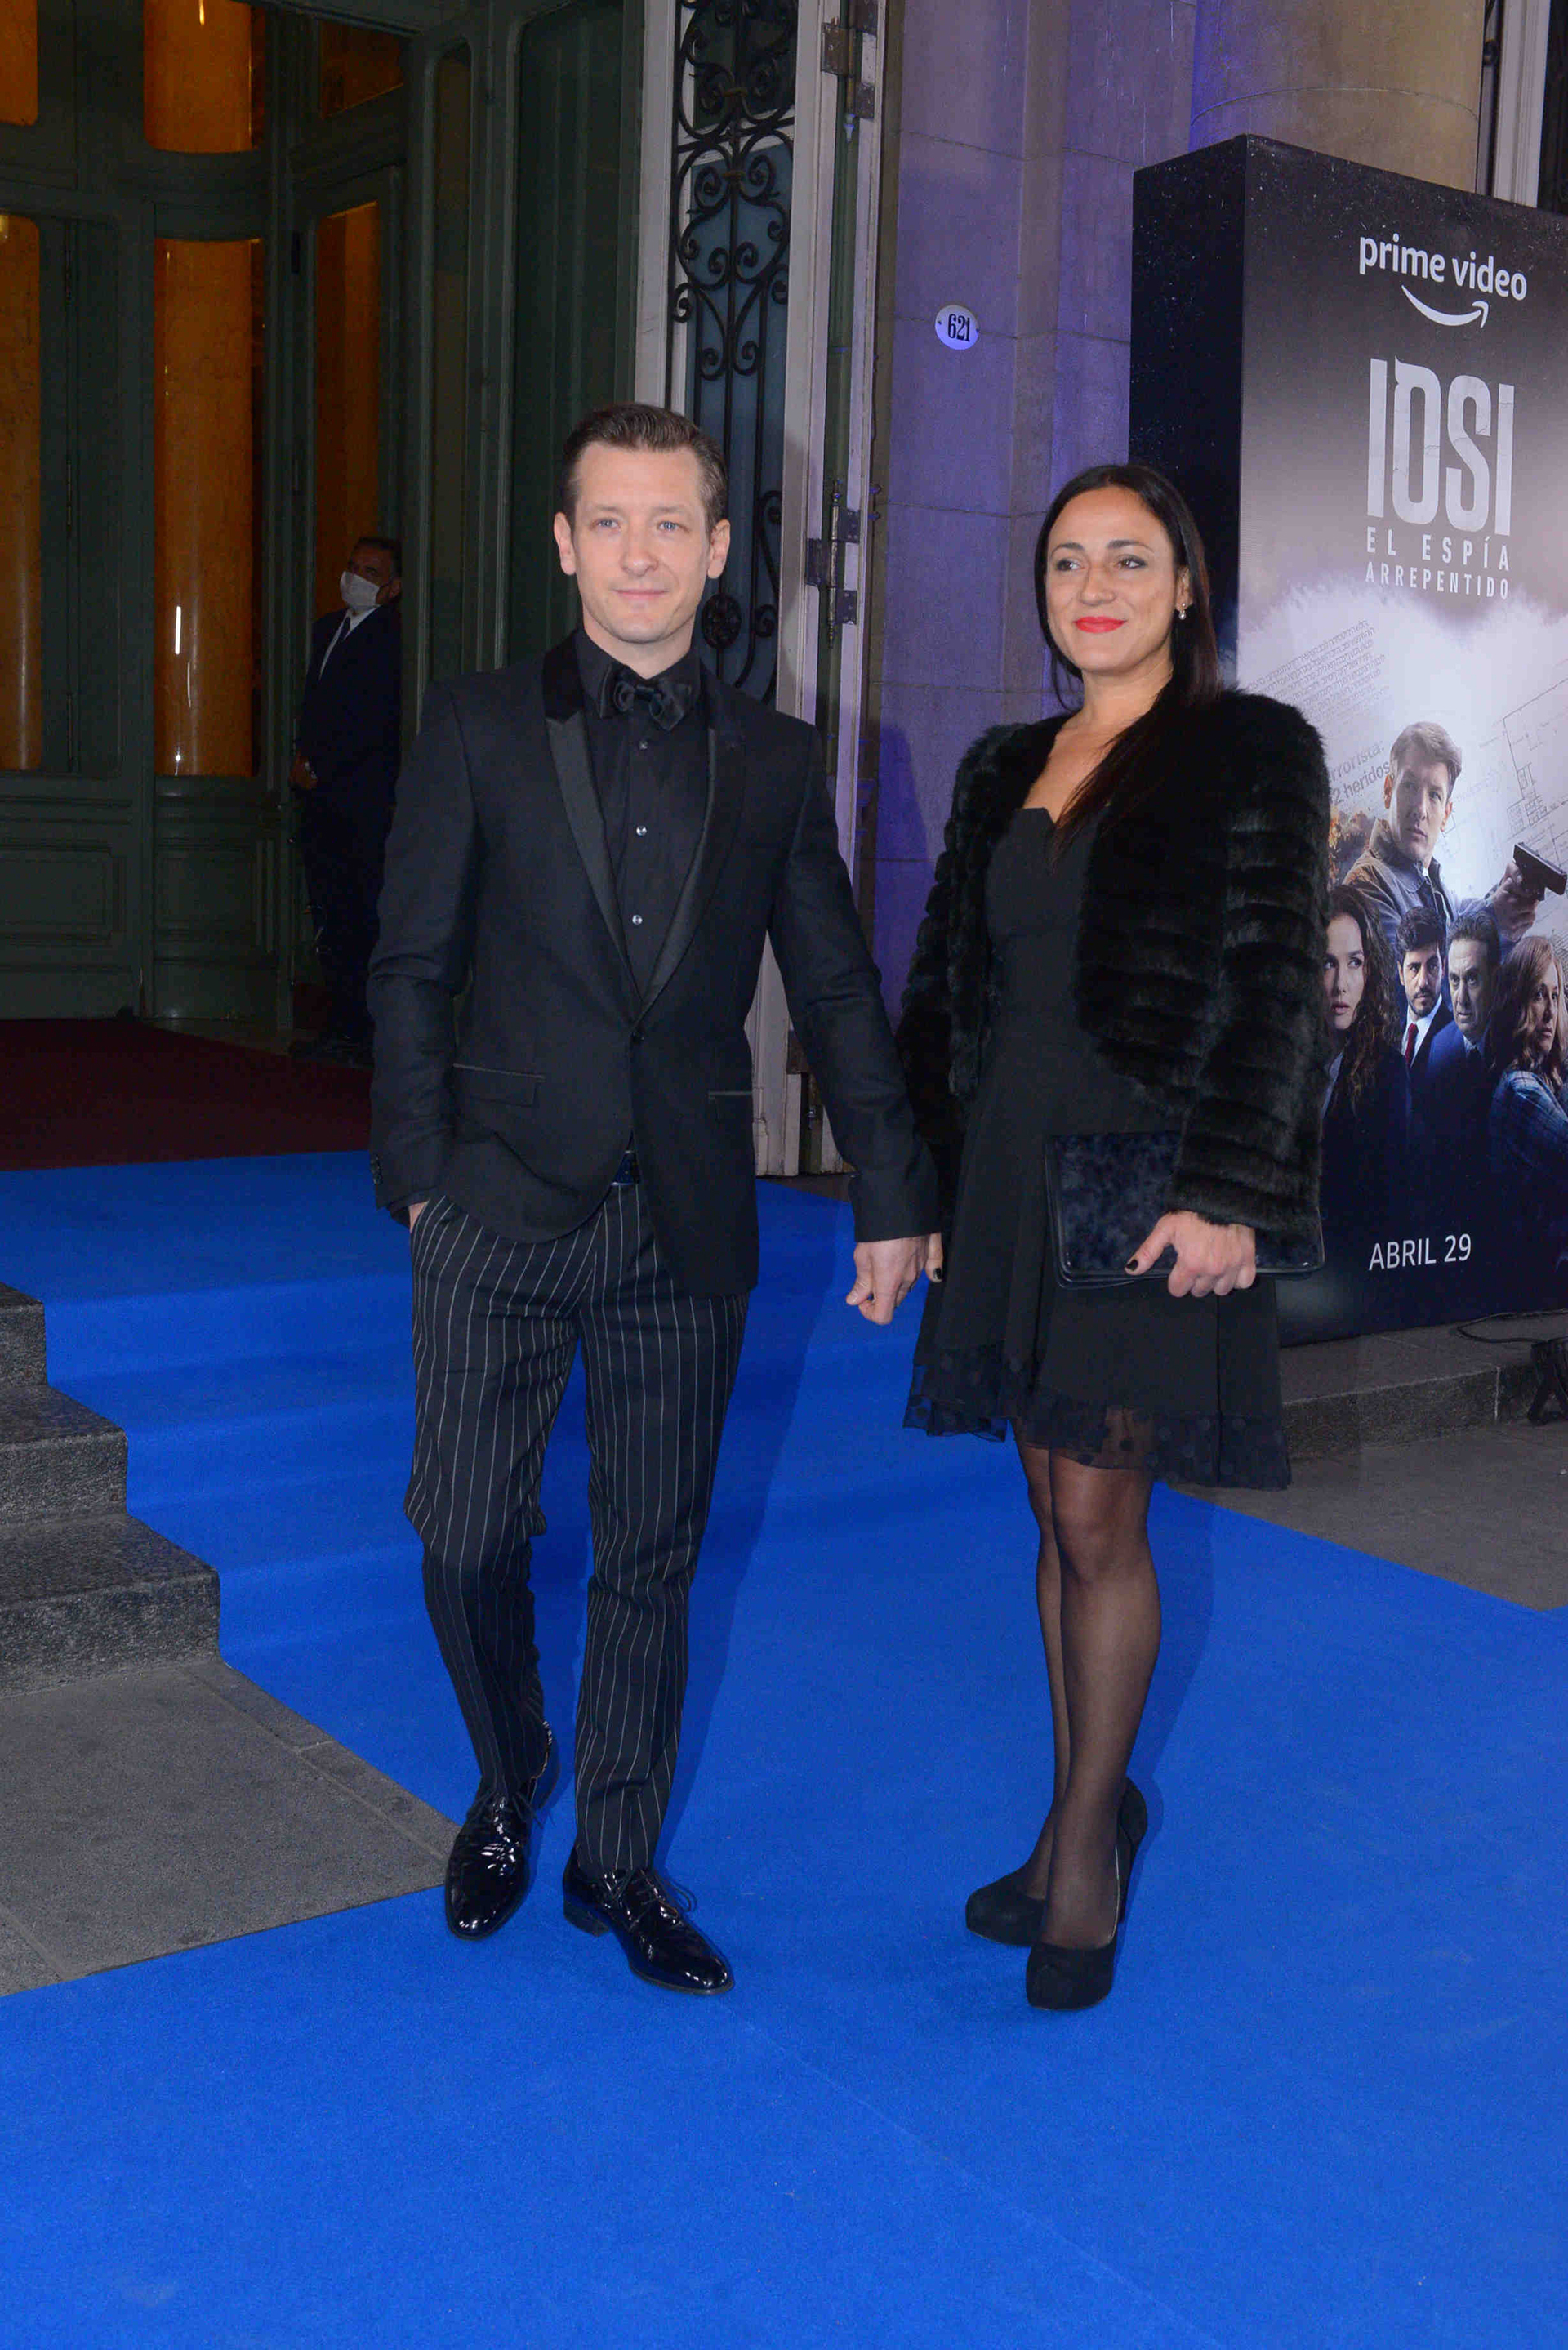 Gustavo Bassani was also accompanied by his partner, Johana Copes 